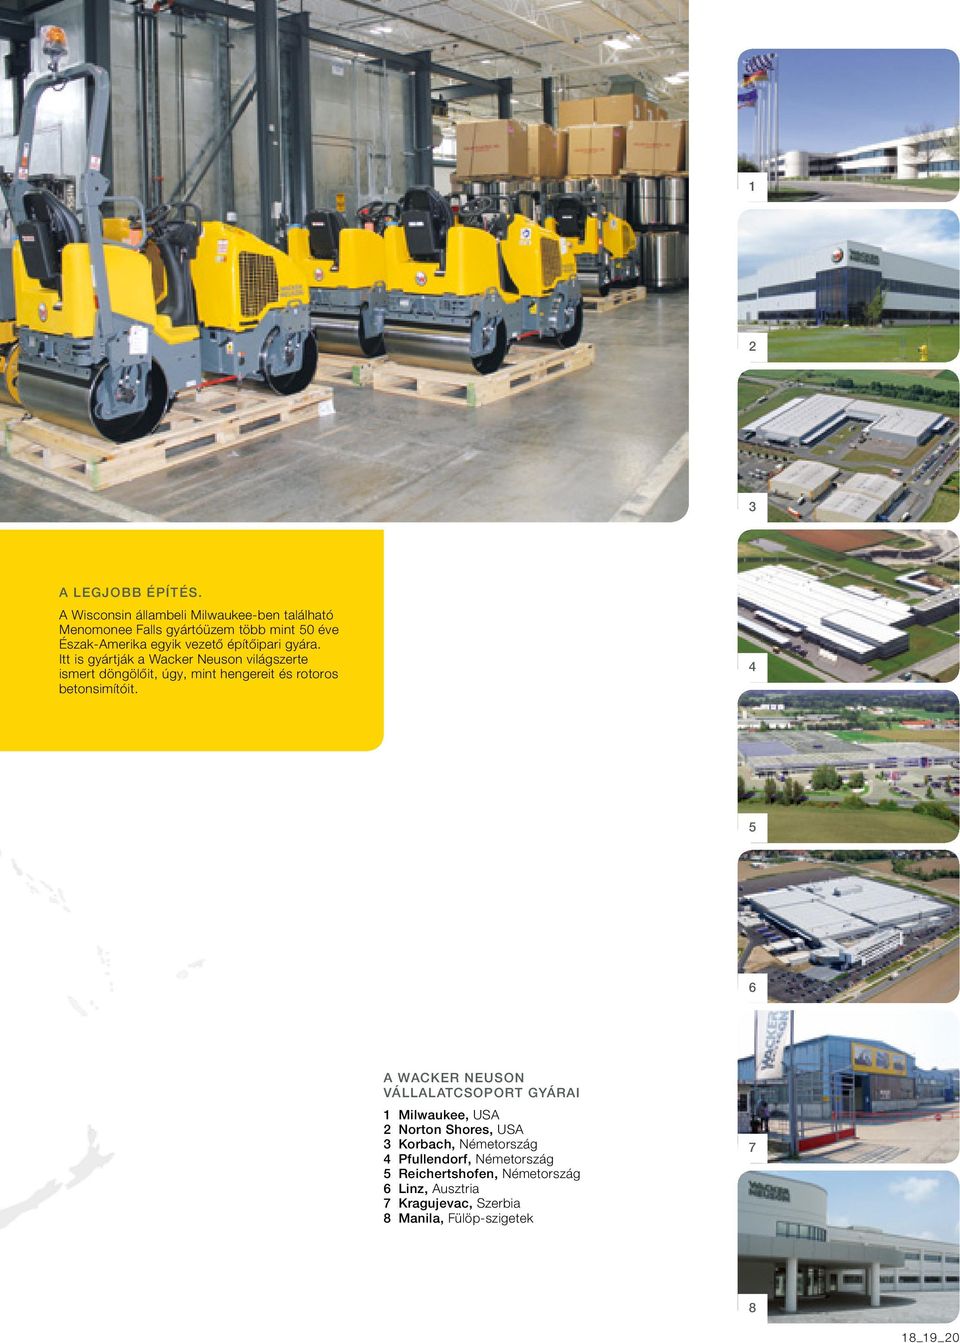 építőipari gyára. Itt is gyártják a Wacker Neuson világszerte ismert döngölőit, úgy, mint hengereit és rotoros betonsimítóit.